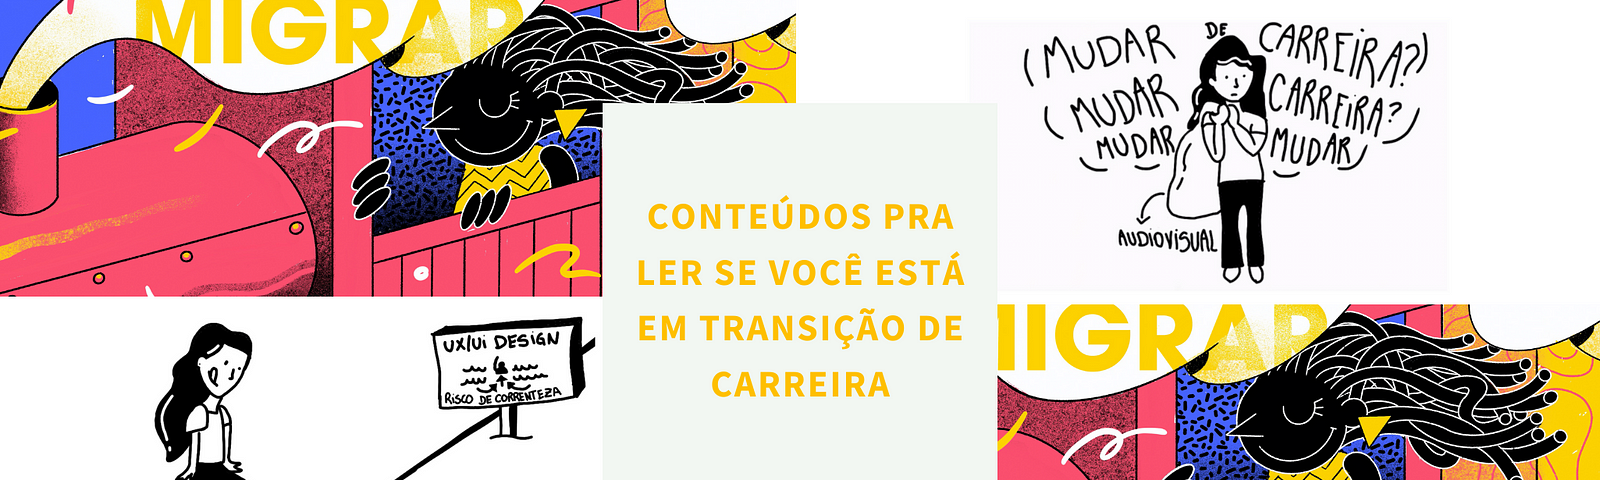 Imagem com quatro quadrantes com imagens extraídas dos textos da Laís Lara e Lidiane Santana, citadas nesse artigo.